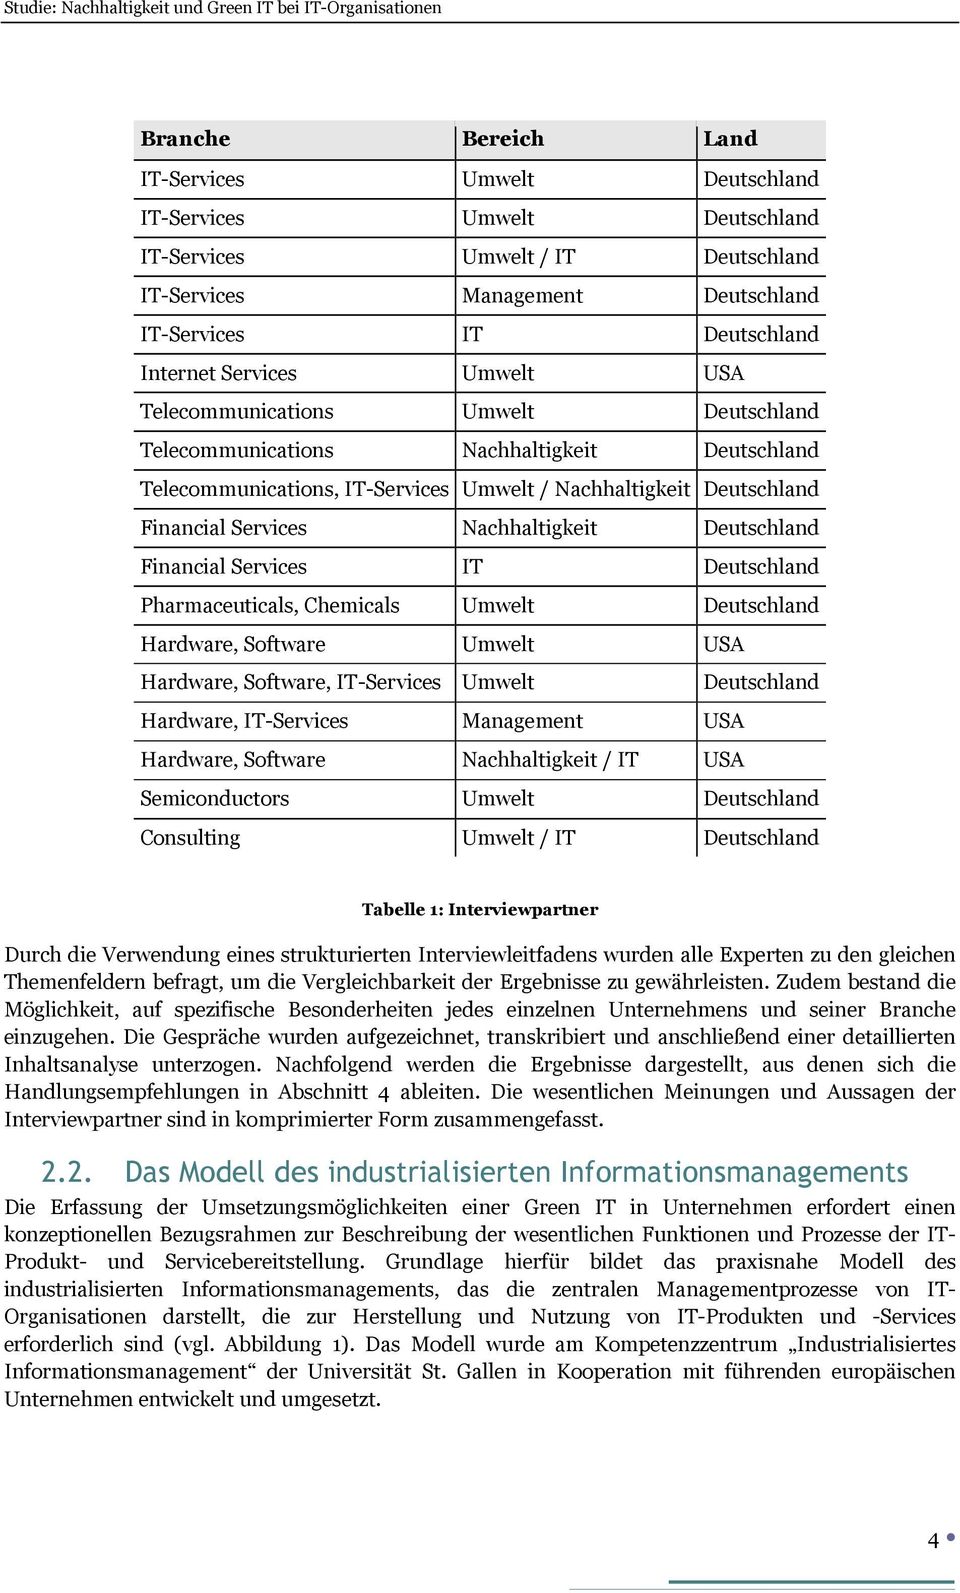 Deutschland Financial Services IT Deutschland Pharmaceuticals, Chemicals Umwelt Deutschland Hardware, Software Umwelt USA Hardware, Software, IT-Services Umwelt Deutschland Hardware, IT-Services